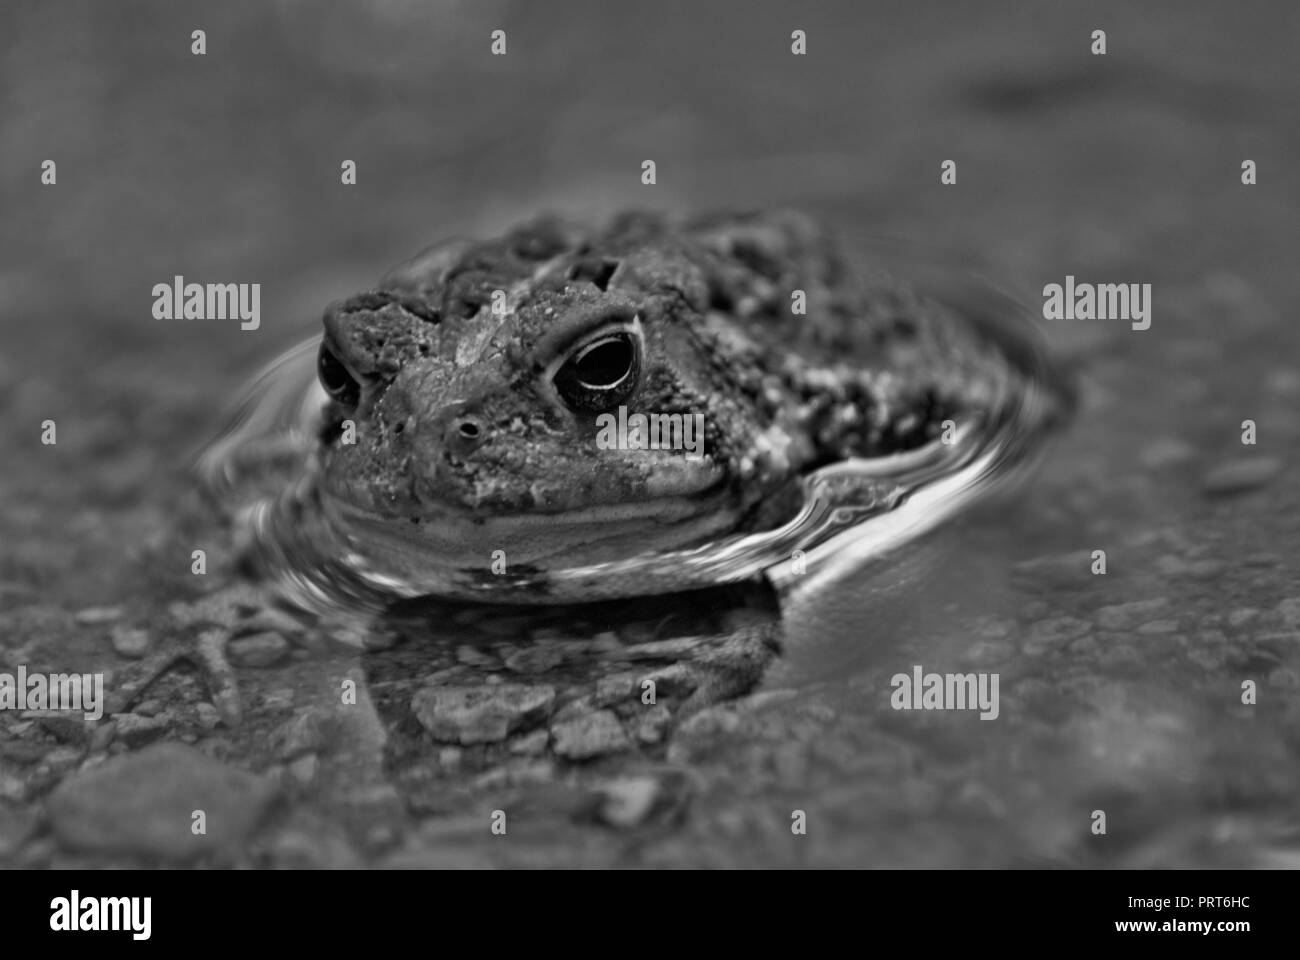 Vue rapprochée d'une grenouille dans l'eau Banque D'Images